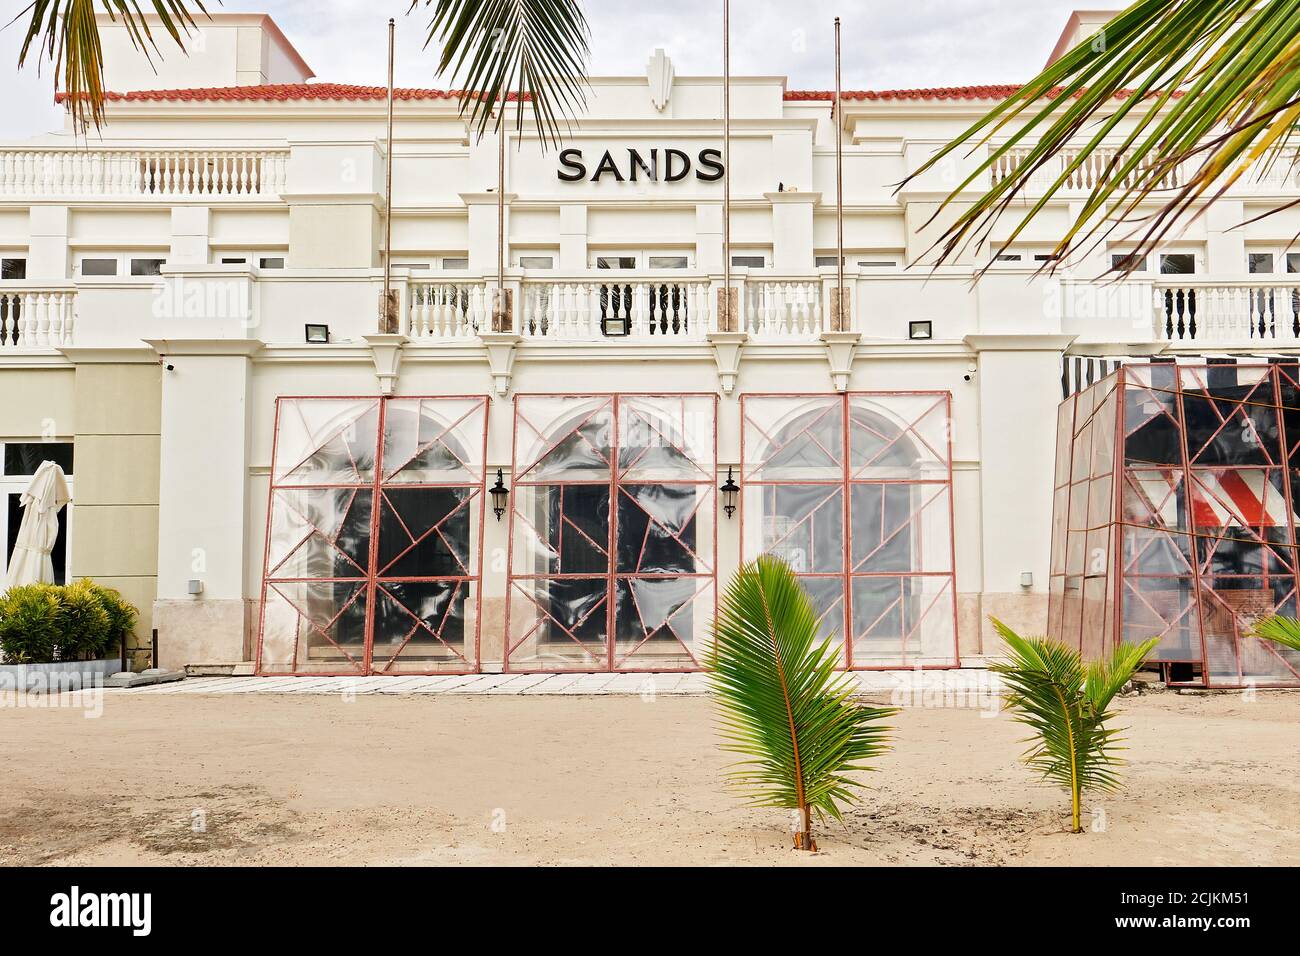 Sands Hotel auf Boracay Island am White Beach ist geschlossen und verbarrikadiert wegen der Schließung durch die Corona Pandemie, Asien Stockfoto